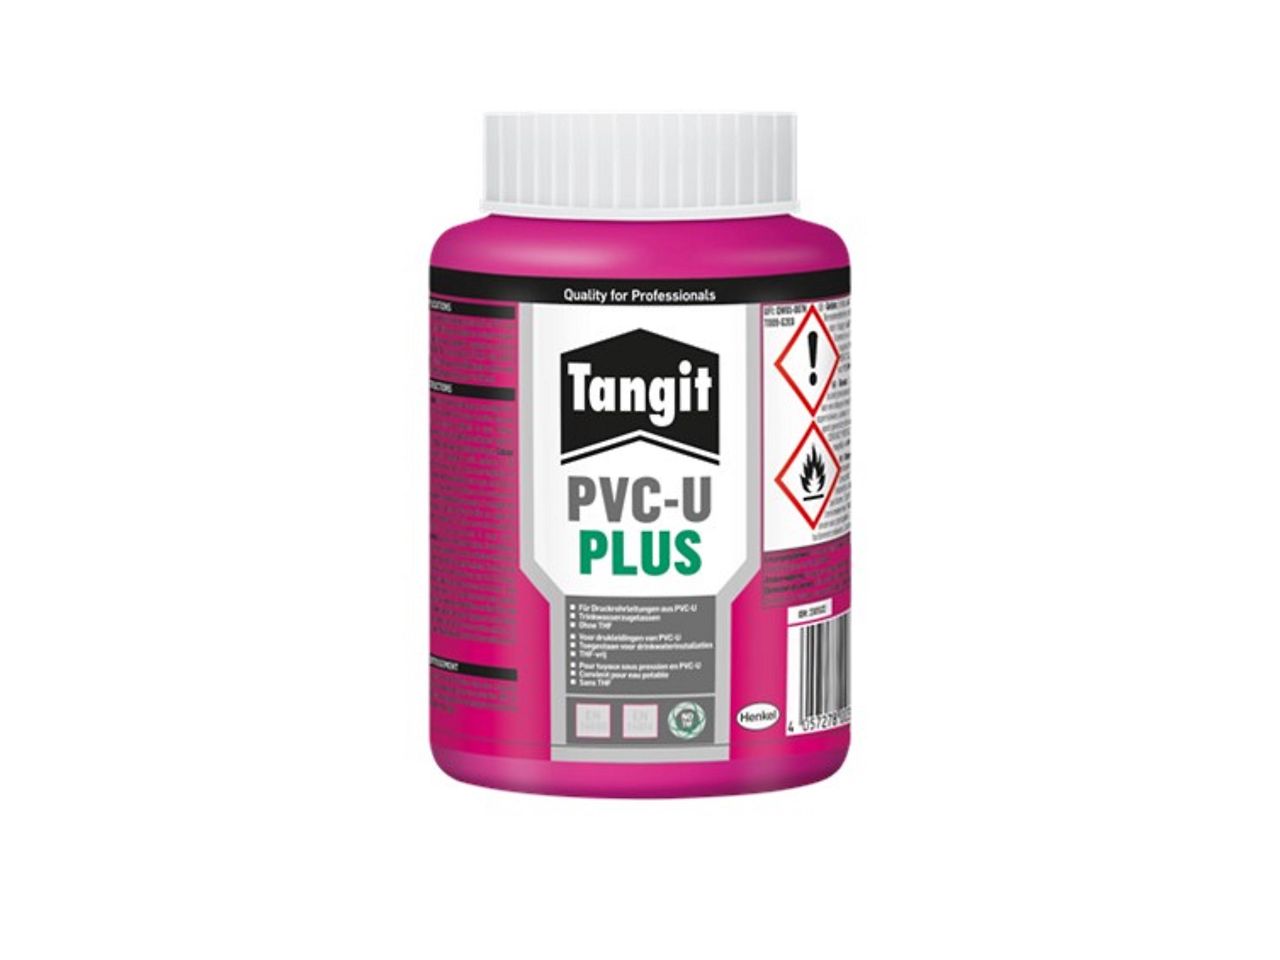 Tangit PVC-U Plus ist für das Verkleben von thermoplastischen Druckrohrleitungen aus PVC-U in anspruchsvollsten Anwendungsbereichen freigegeben. Er ist Tetrahydrofuran (THF)-frei und erfüllt neuste Regularien.